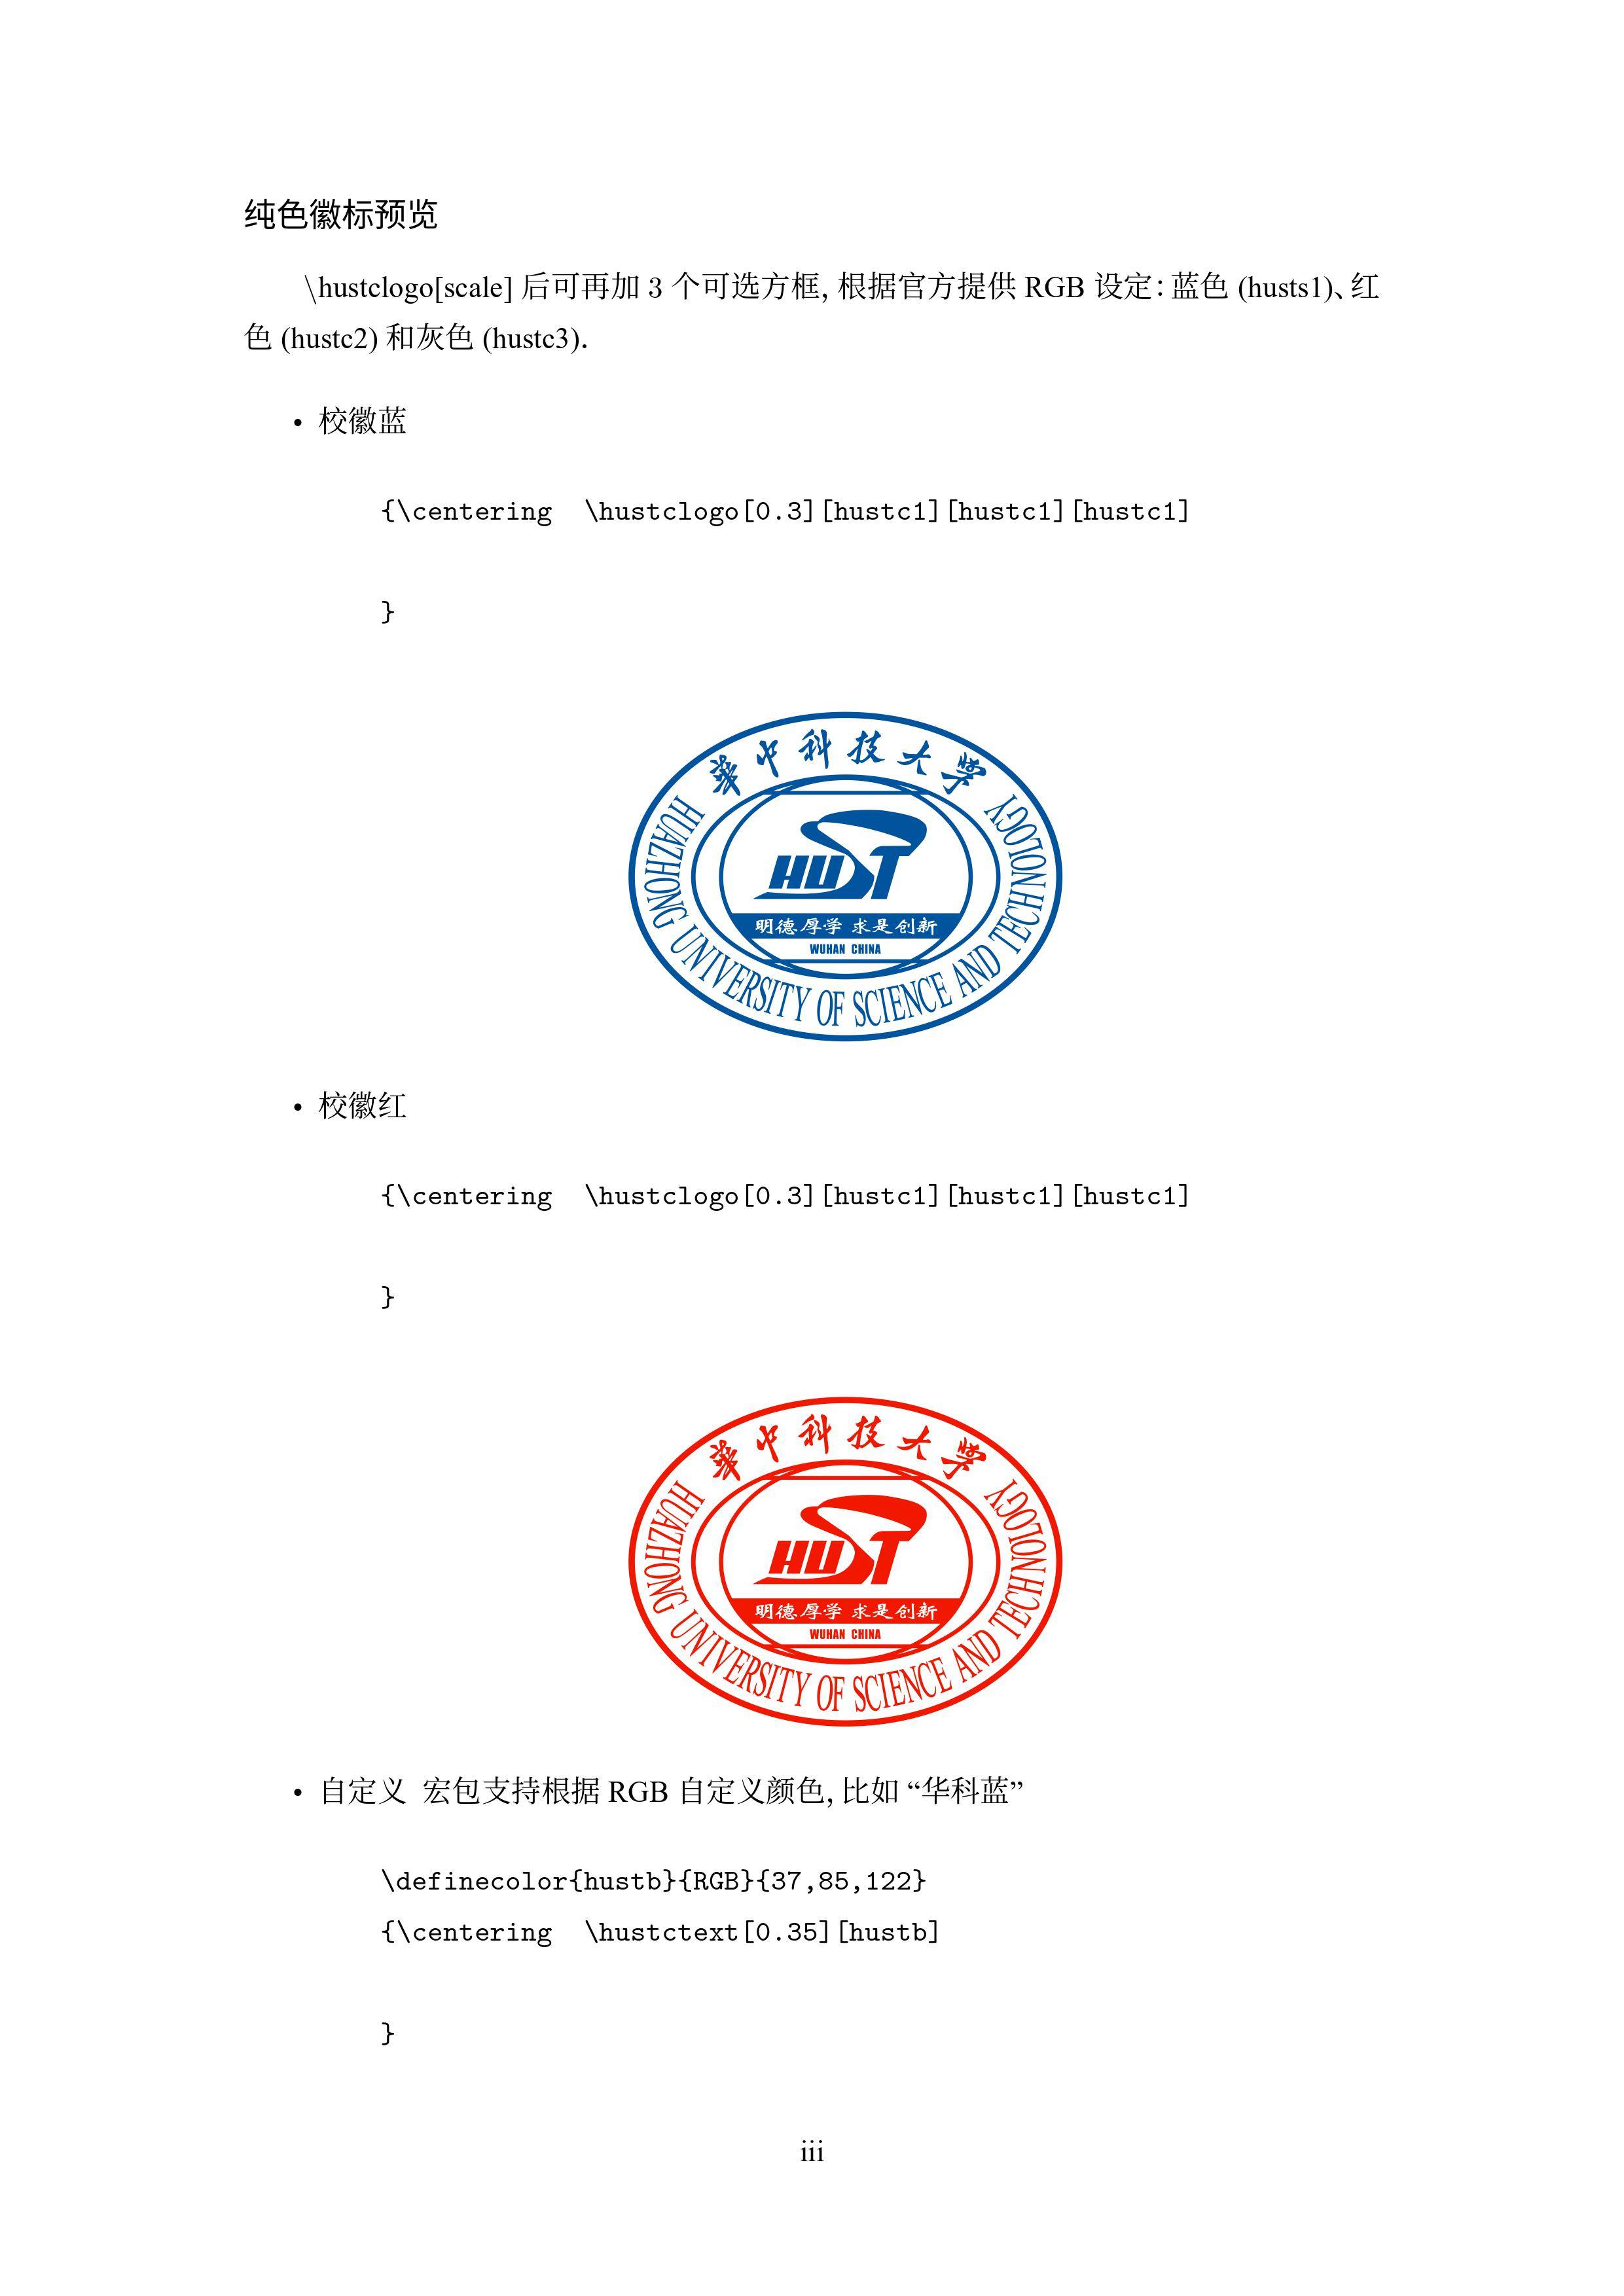 华中科技大学 latex 版徽标分享